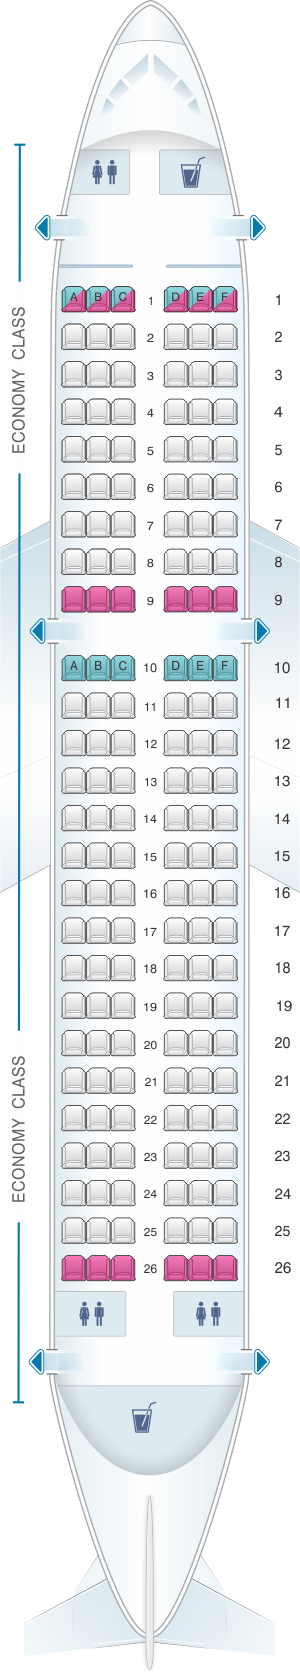 easyjet a320 seating plan